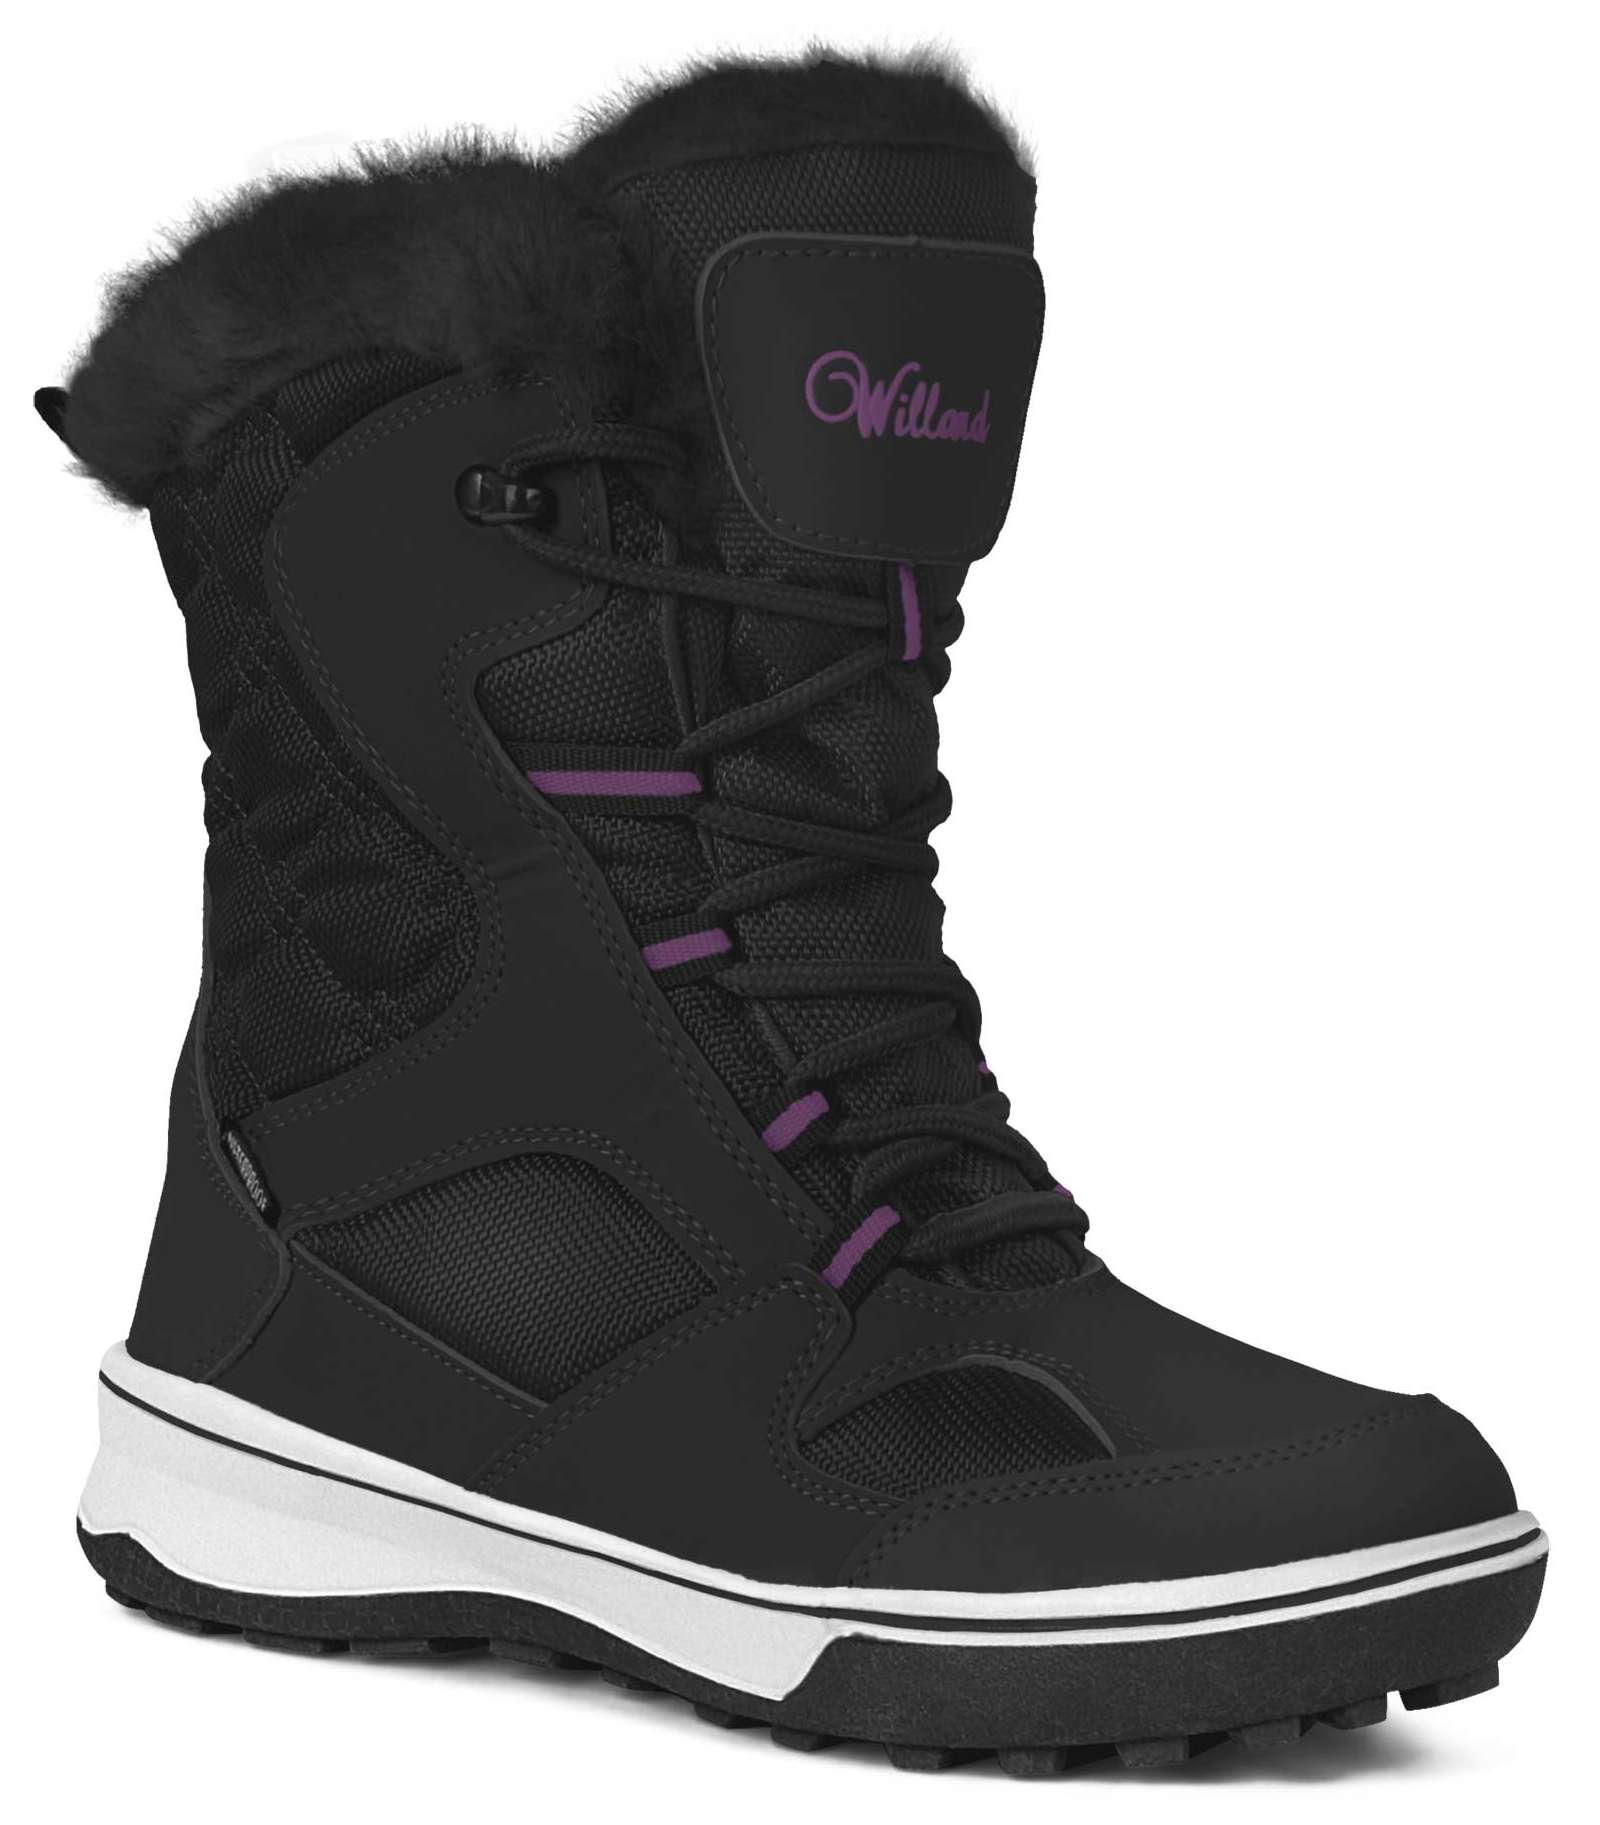 CORONA - Women's Winter Shoes